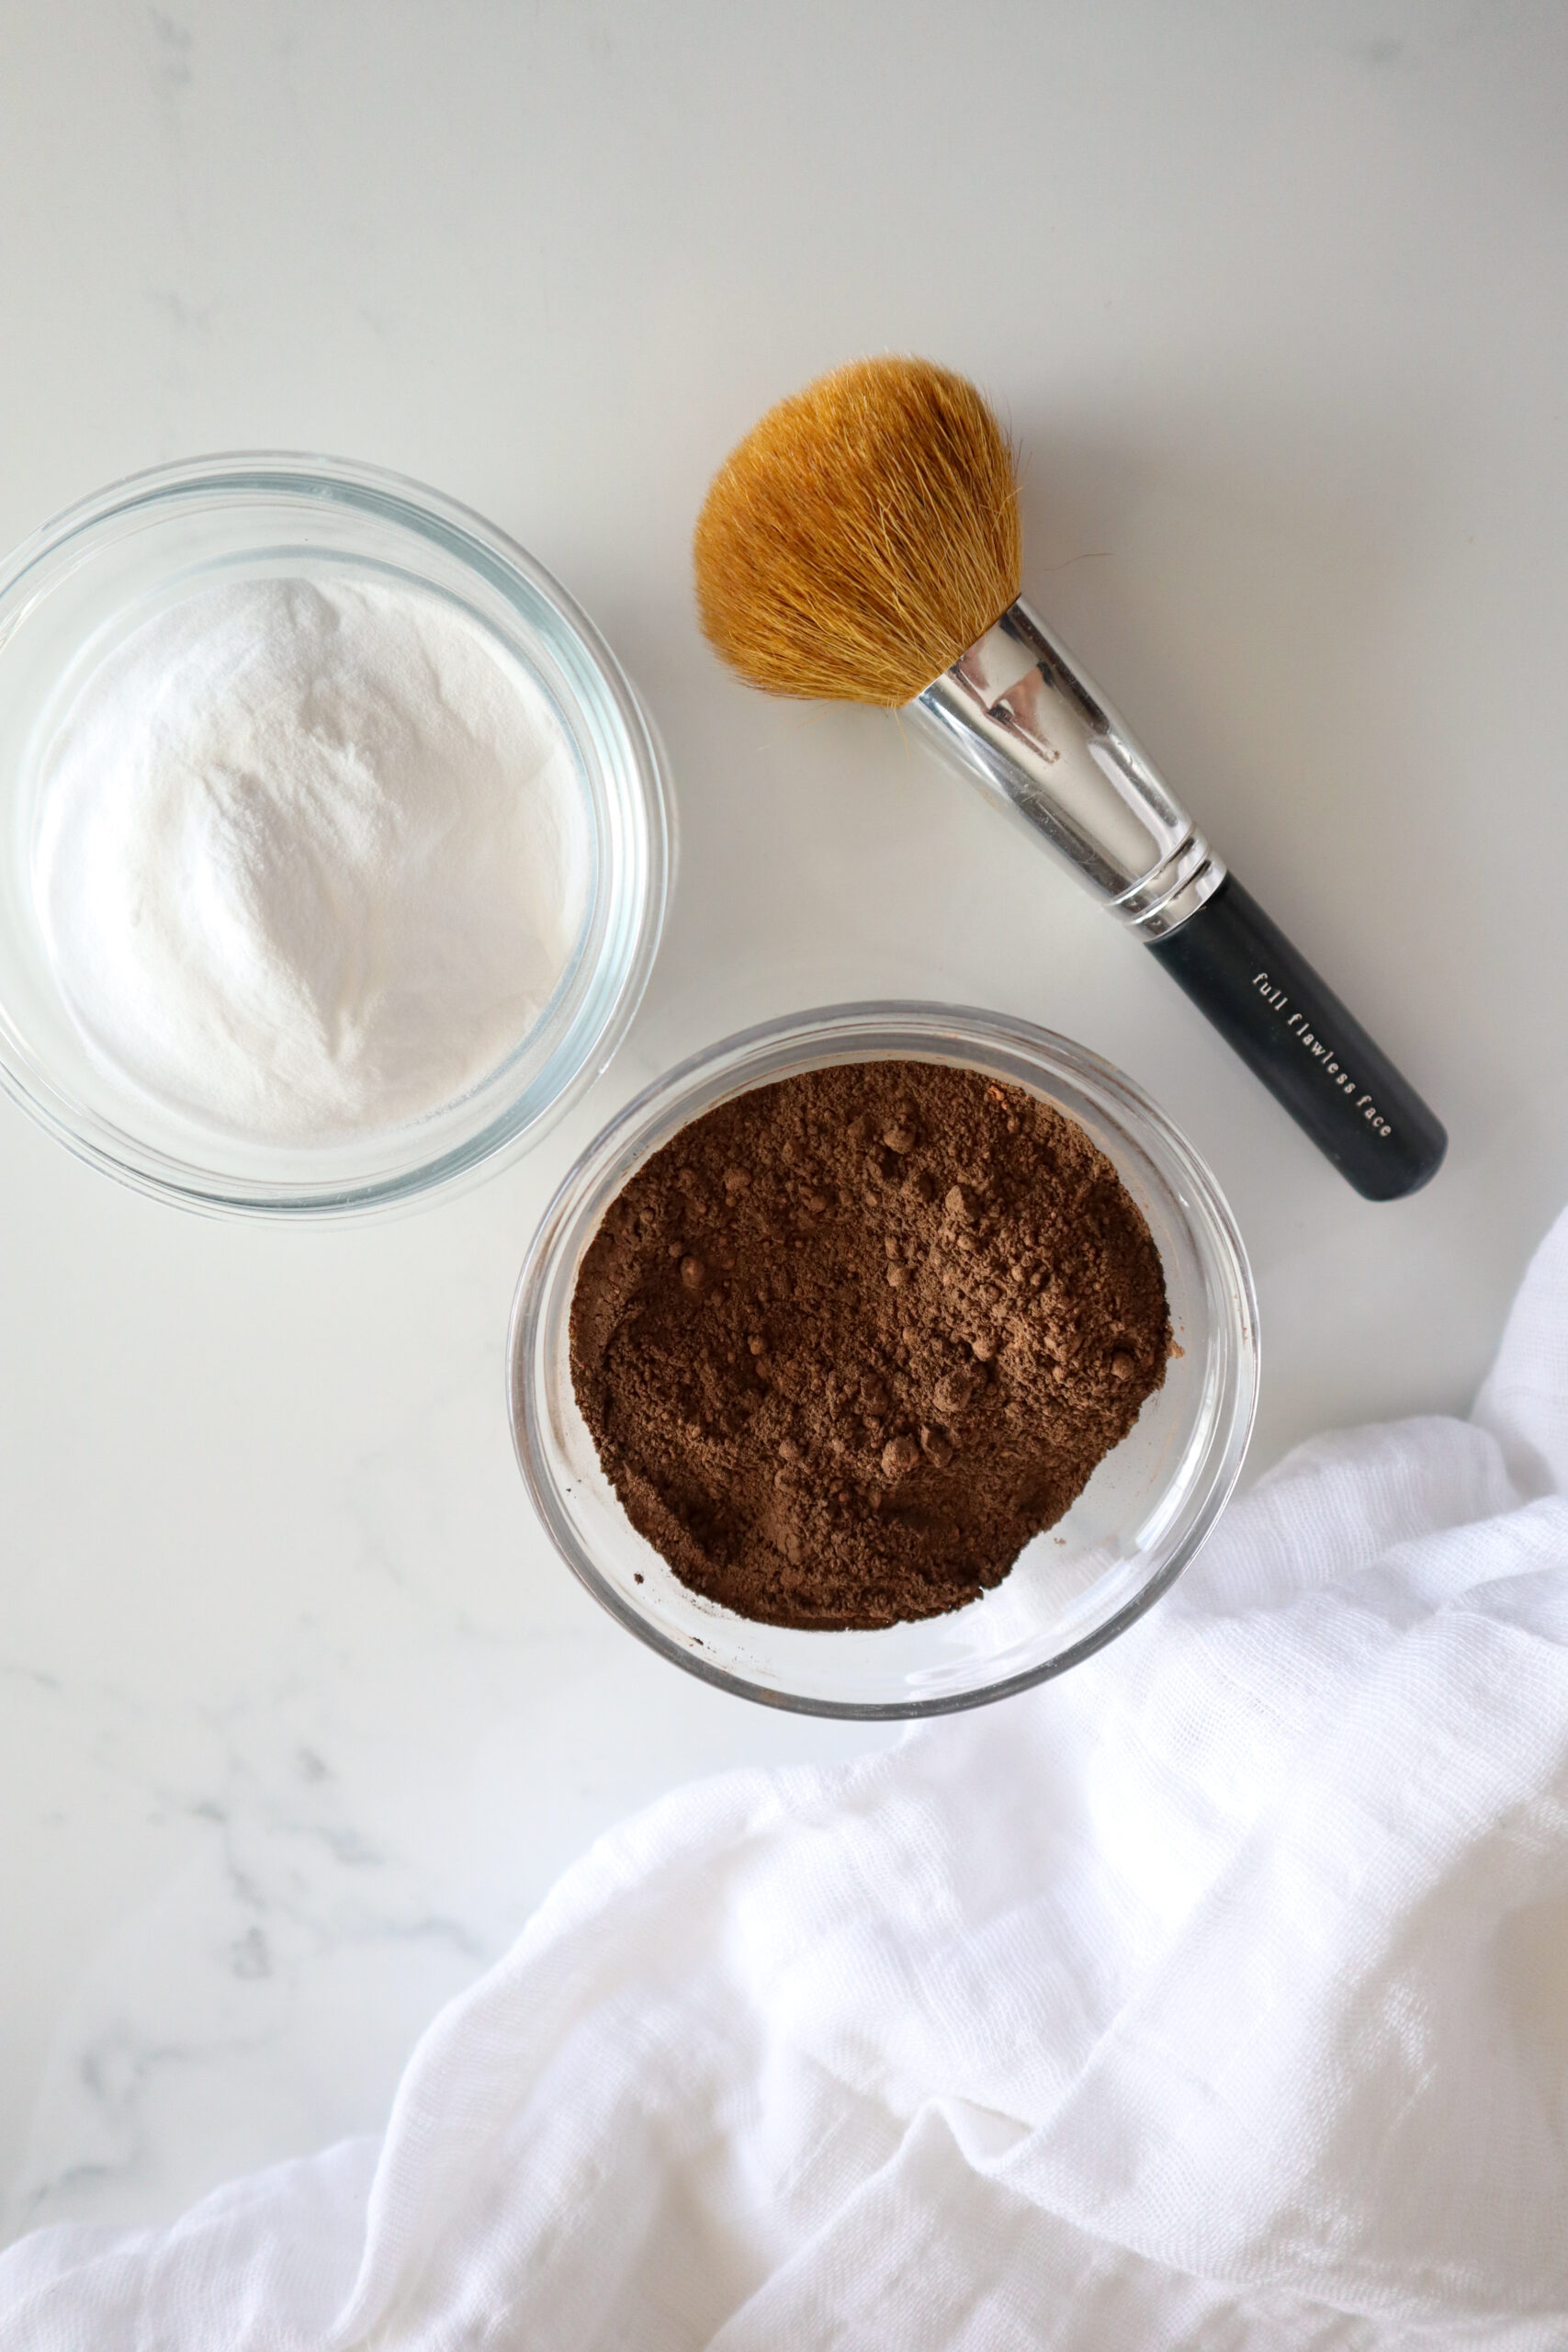 baking powder and cacao powder and makeup brush